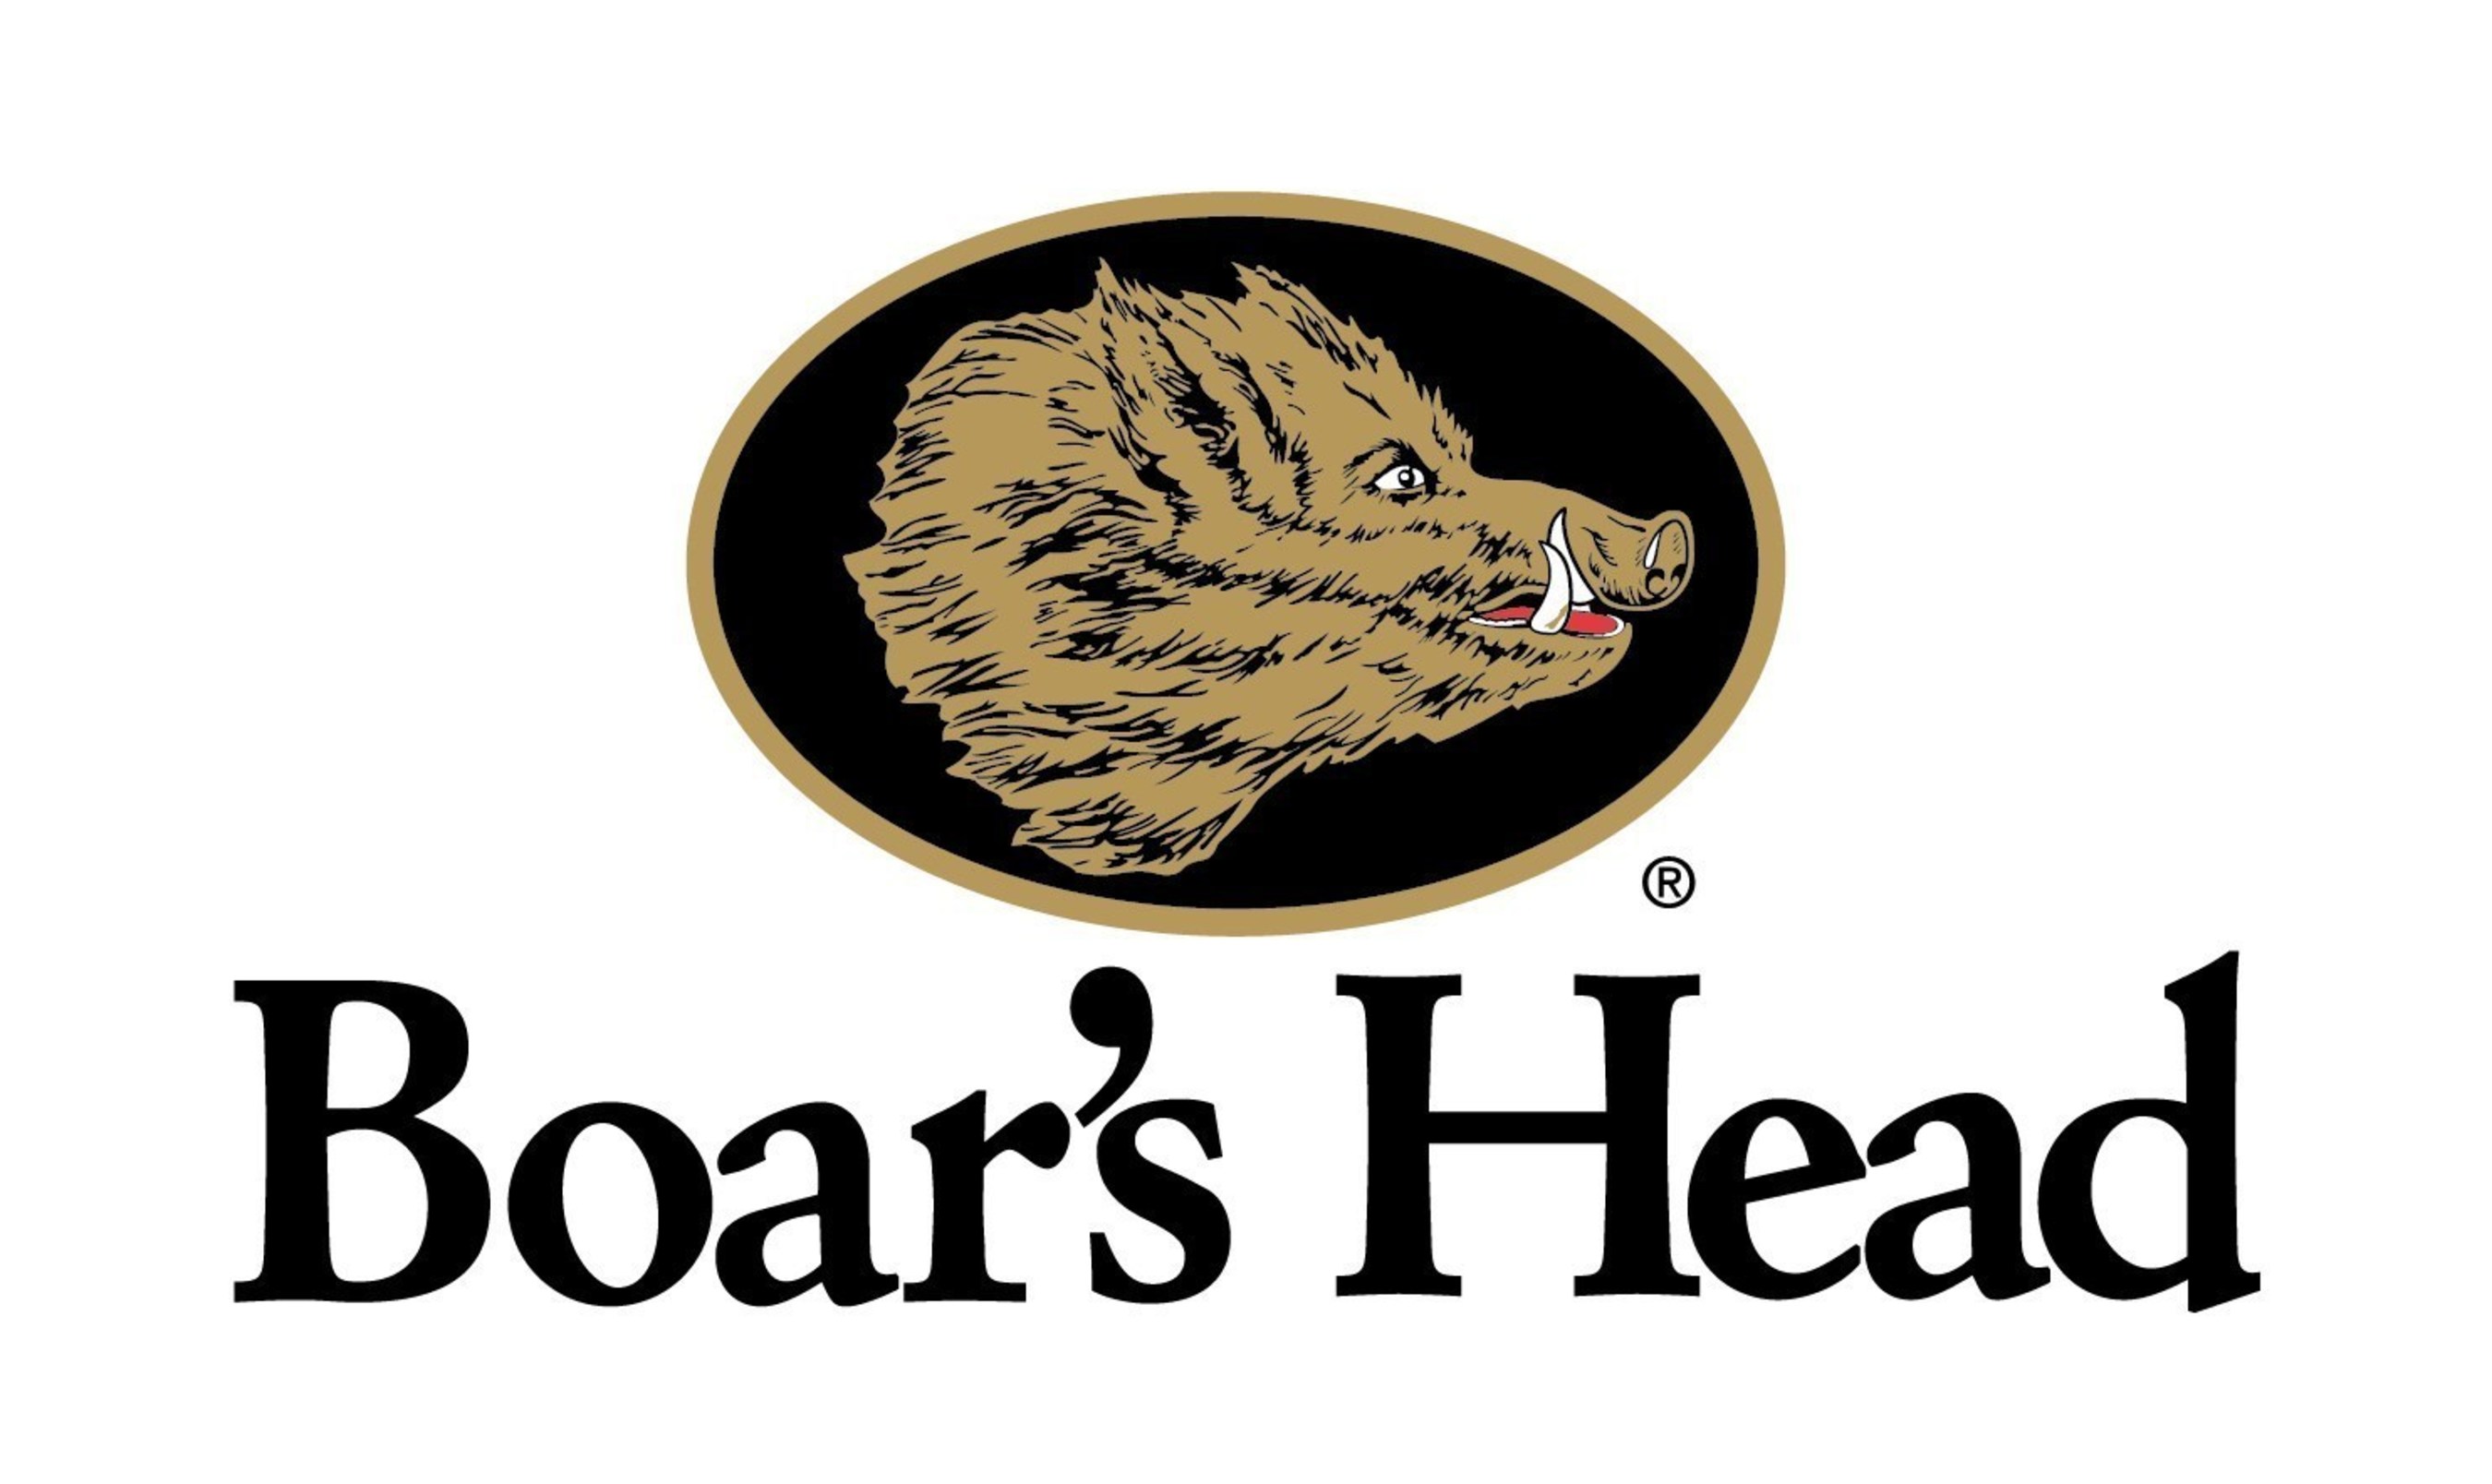 Boar's Head Brand - www.boarshead.com